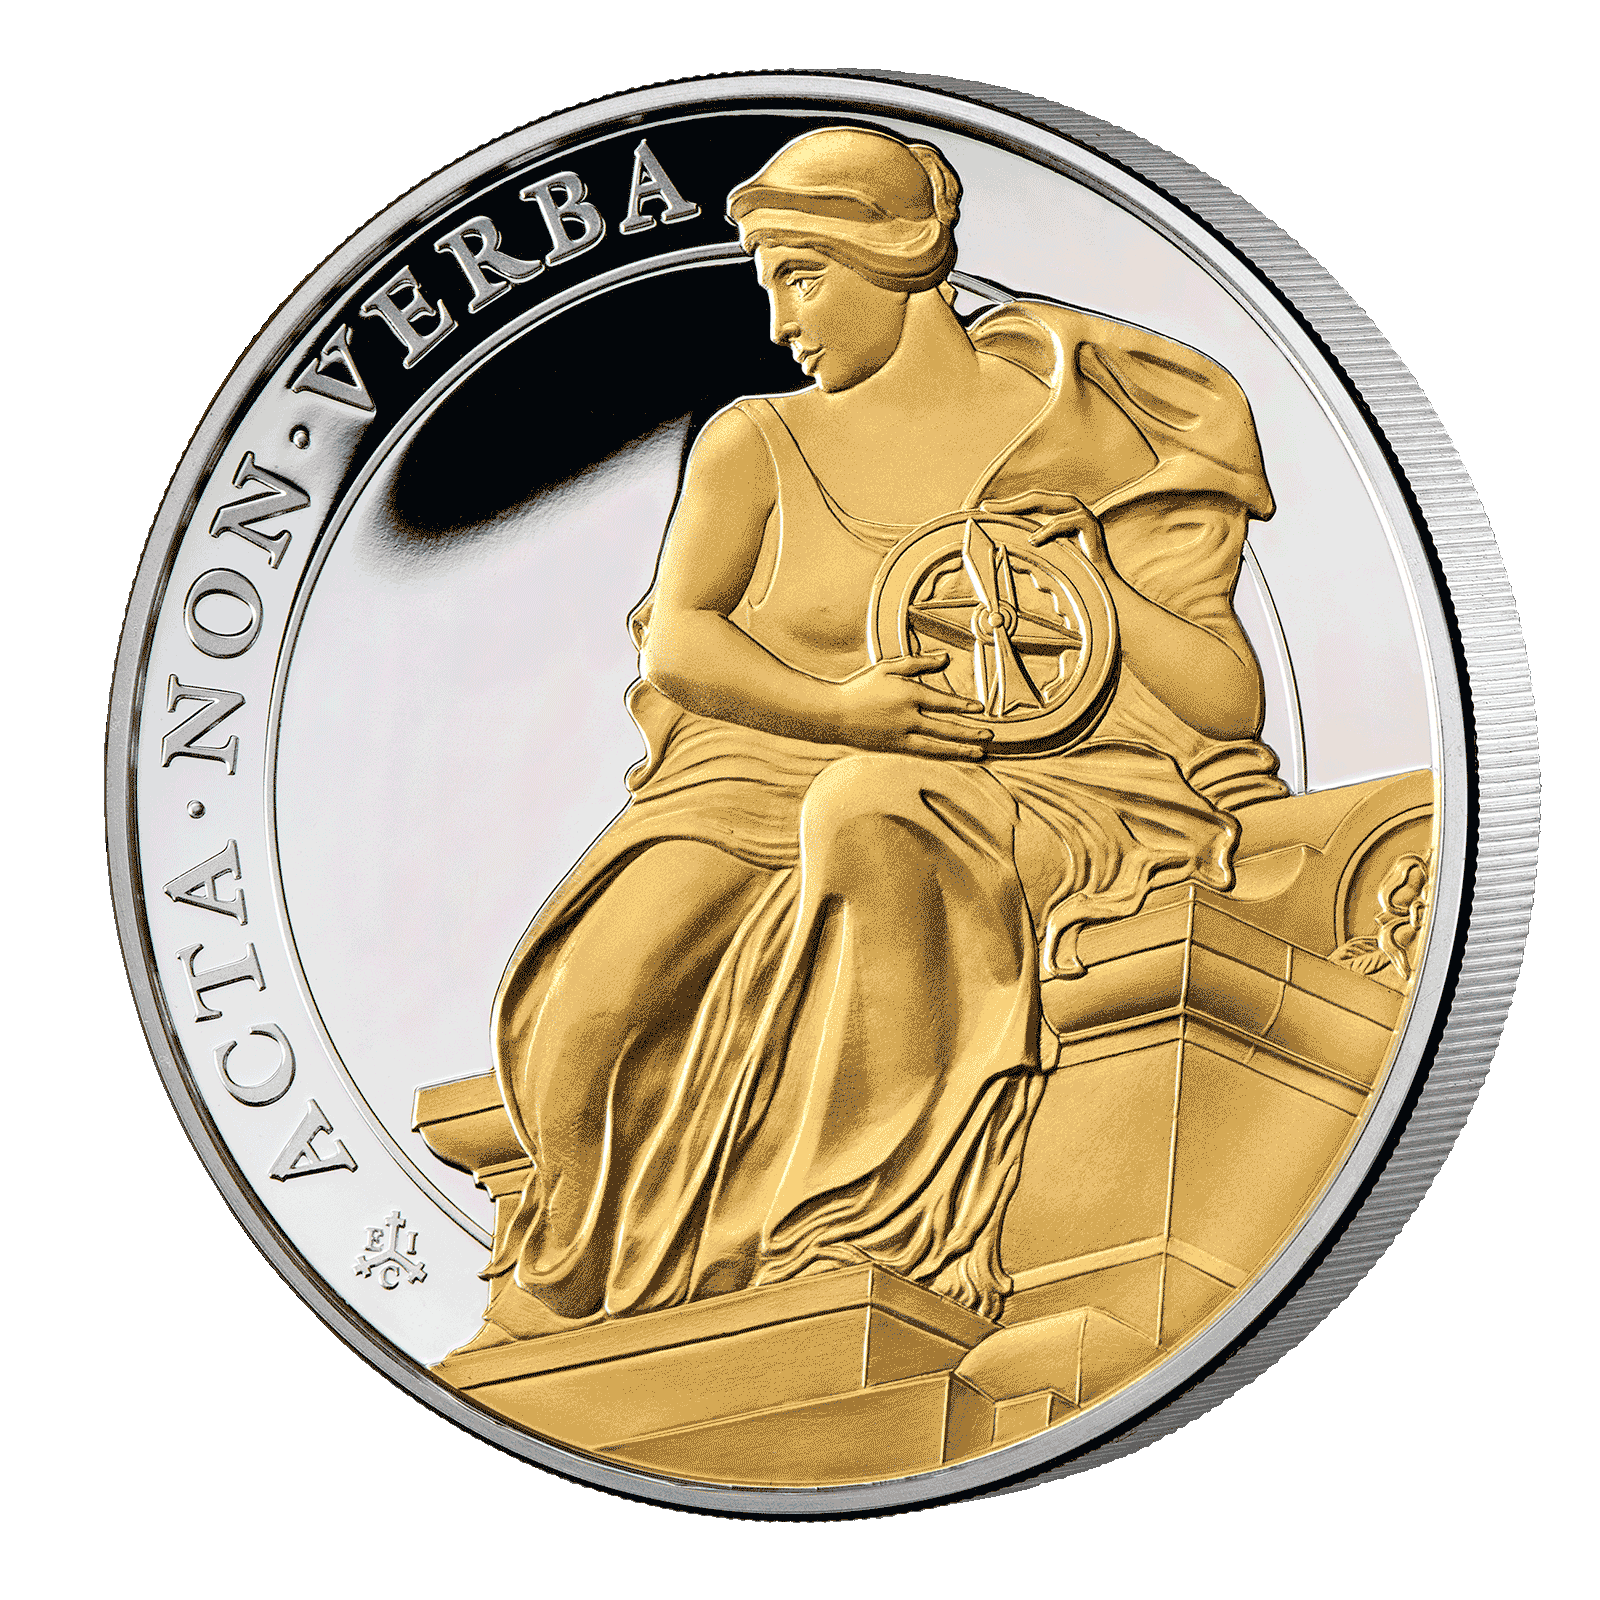 Đồng xu bạc 1oz công tuyệt của nữ hoàng là một sản phẩm quý giá đối với các tín đồ sưu tầm. Hình ảnh chi tiết và đẹp mắt sẽ khiến bạn hiểu thêm về giá trị của đồng xu và mong muốn sở hữu nó cho mình.